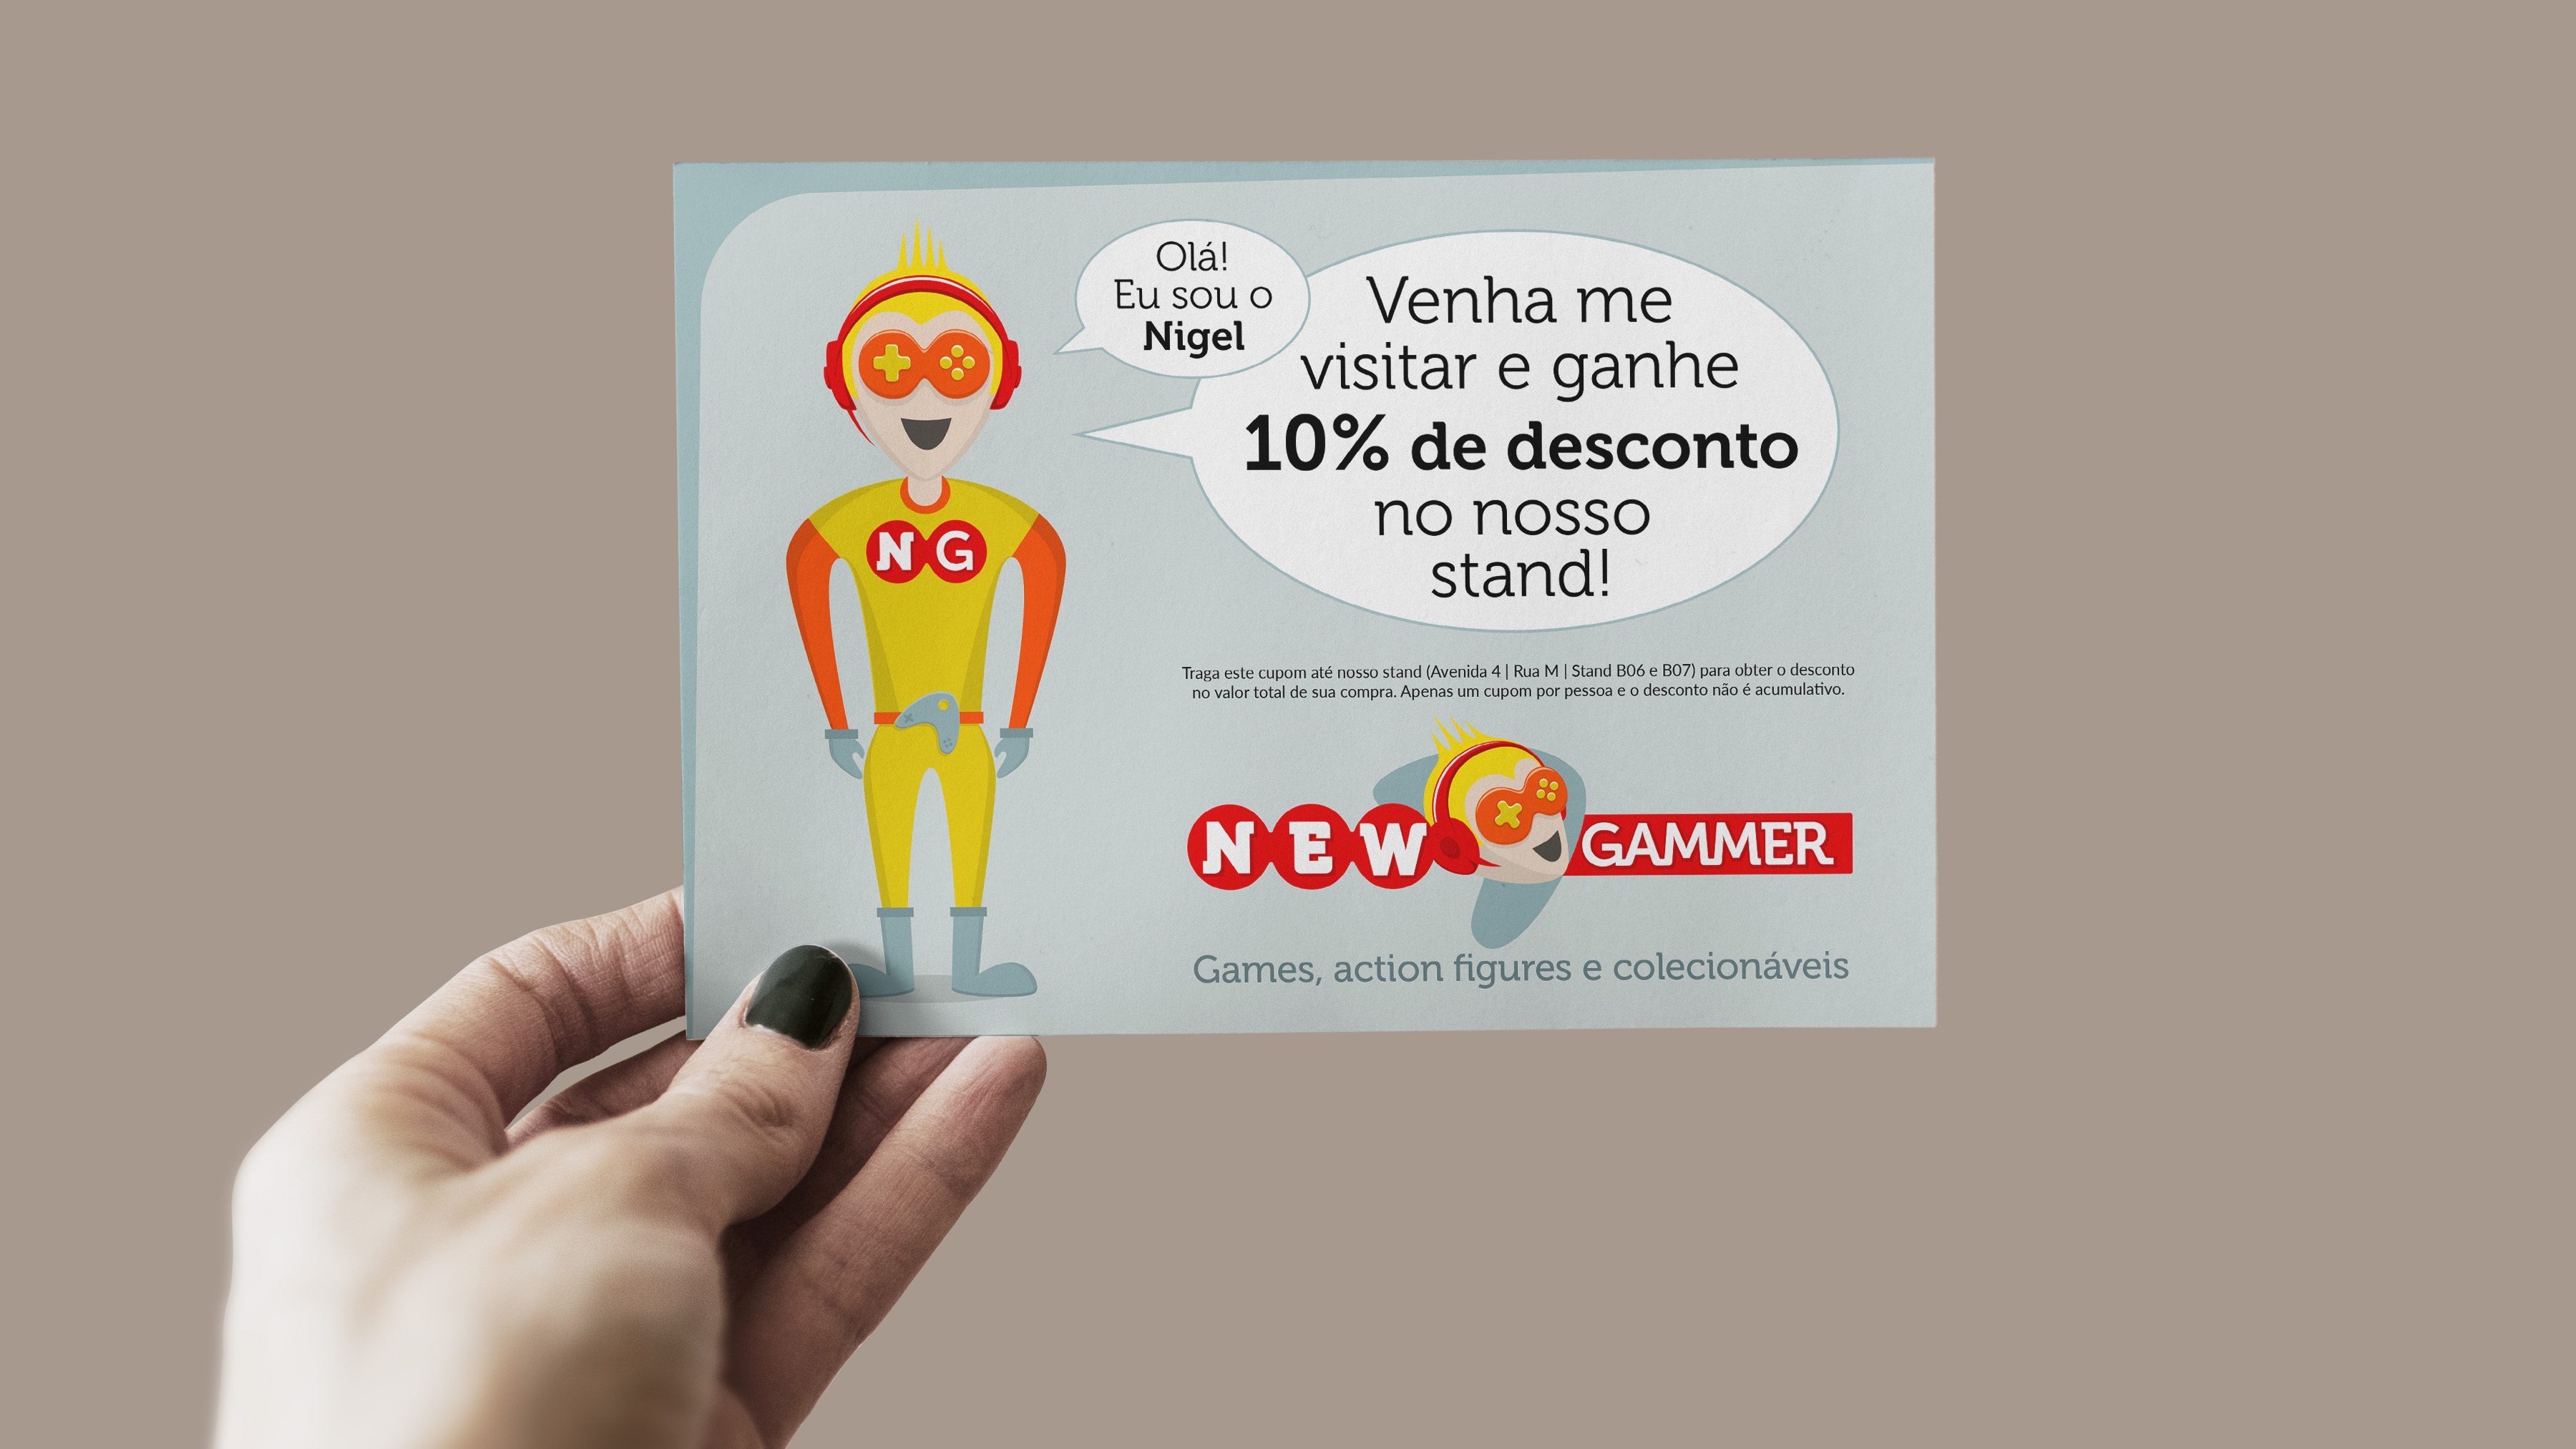 Imagem de cartão postal promocional com comunicação e identidade visual NewGammer impressos.